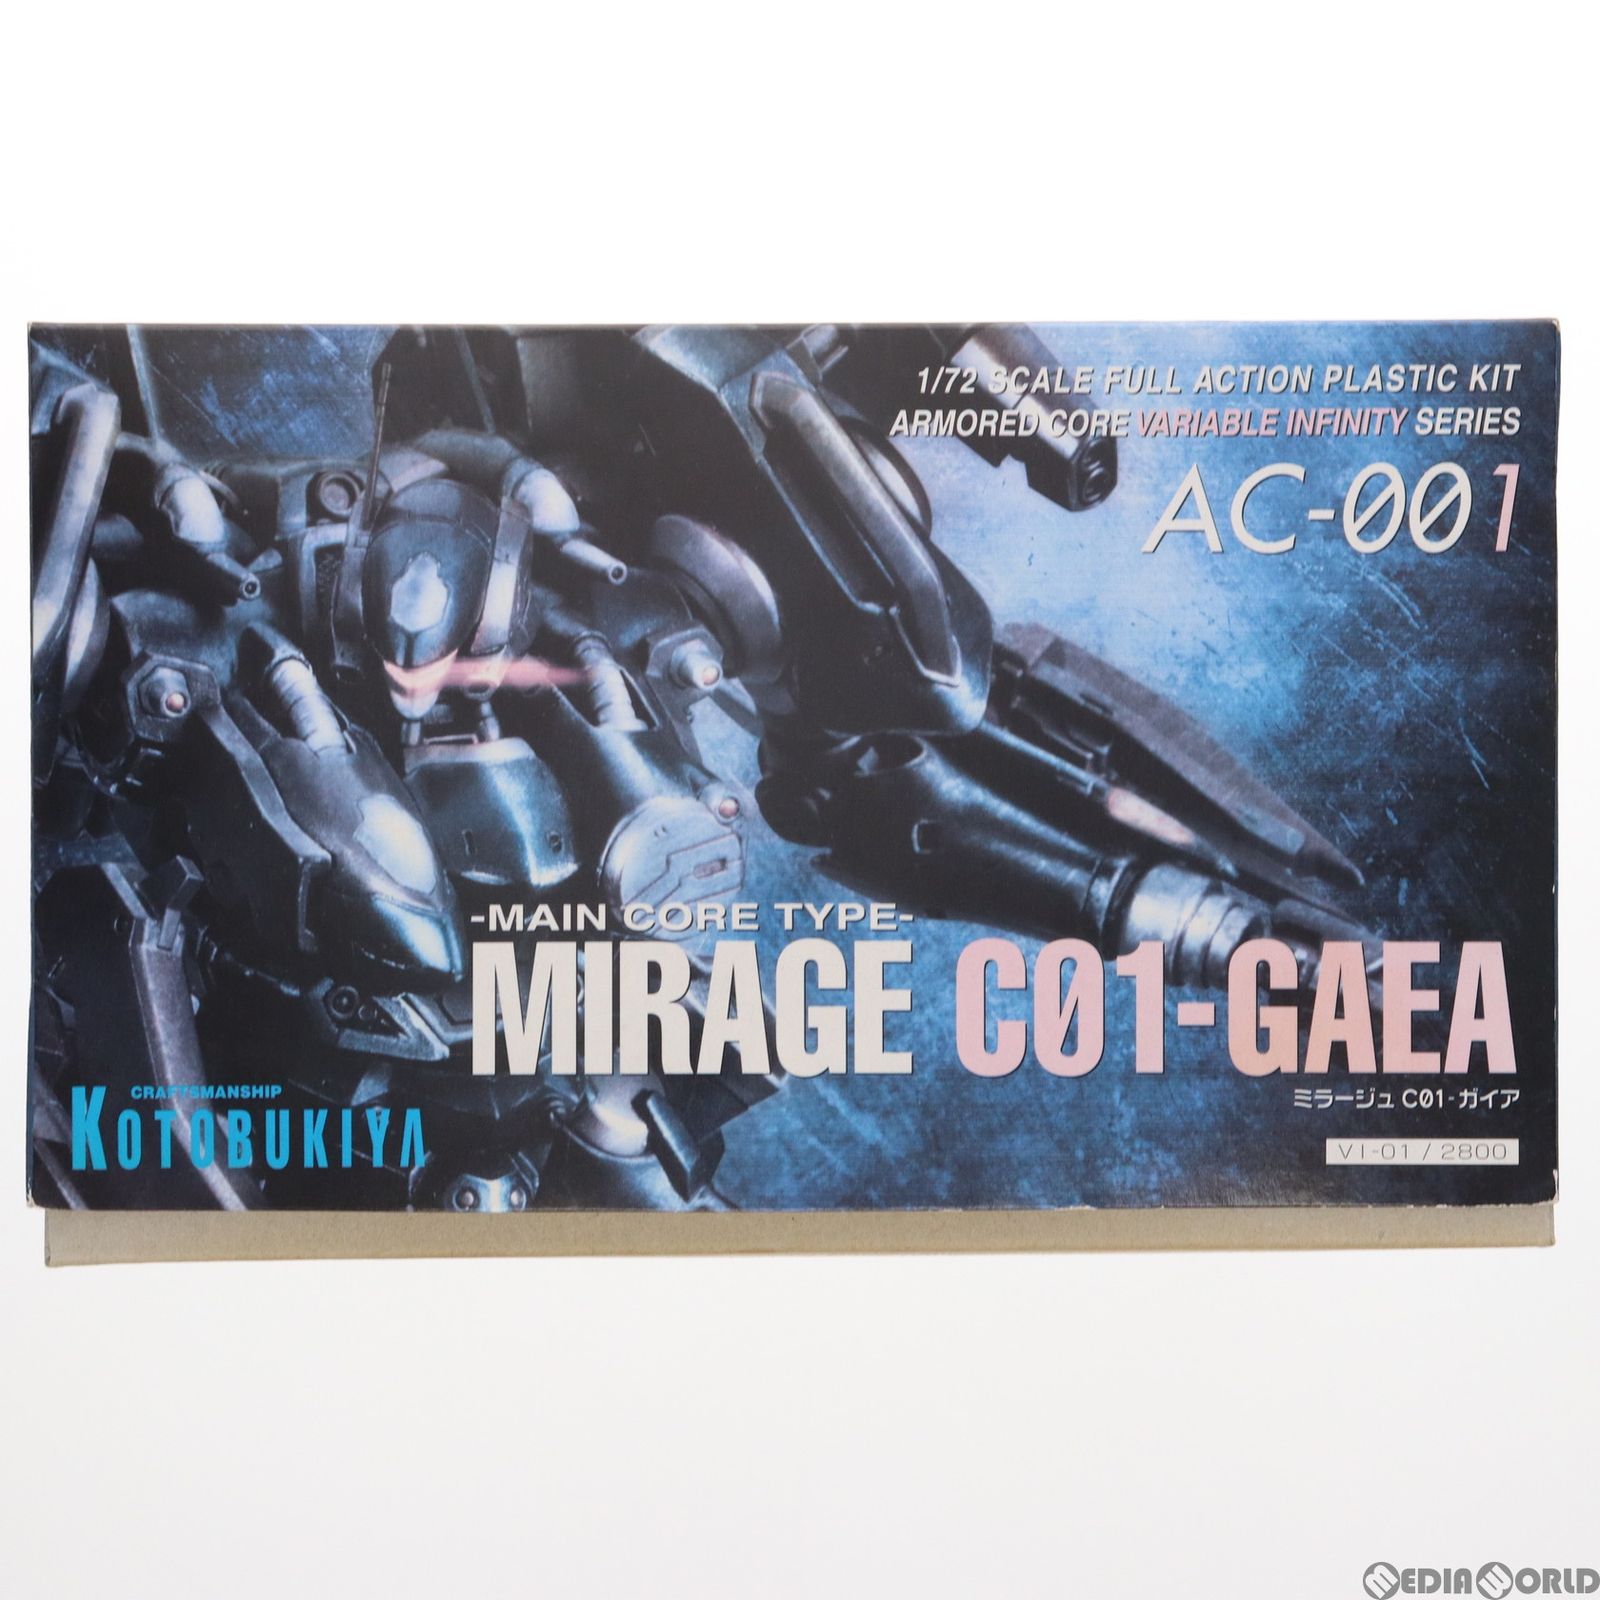 V.I.シリーズ 1/72 ミラージュ C01-GAEA(ガイア) ARMORED CORE 